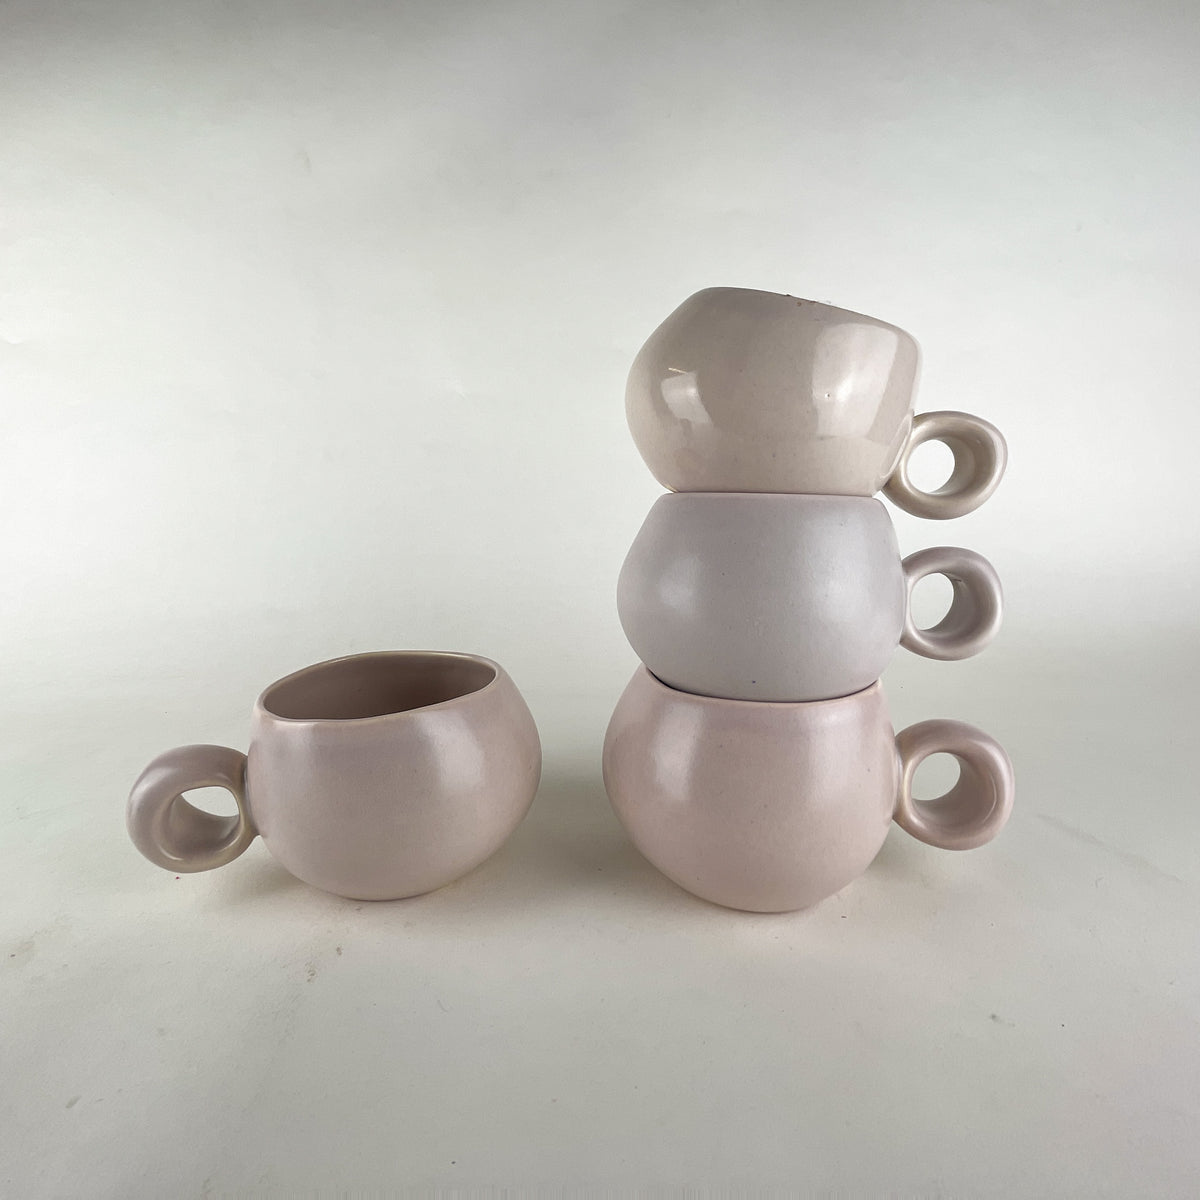 <!--3475--!>Glassware - Ceramic Mug